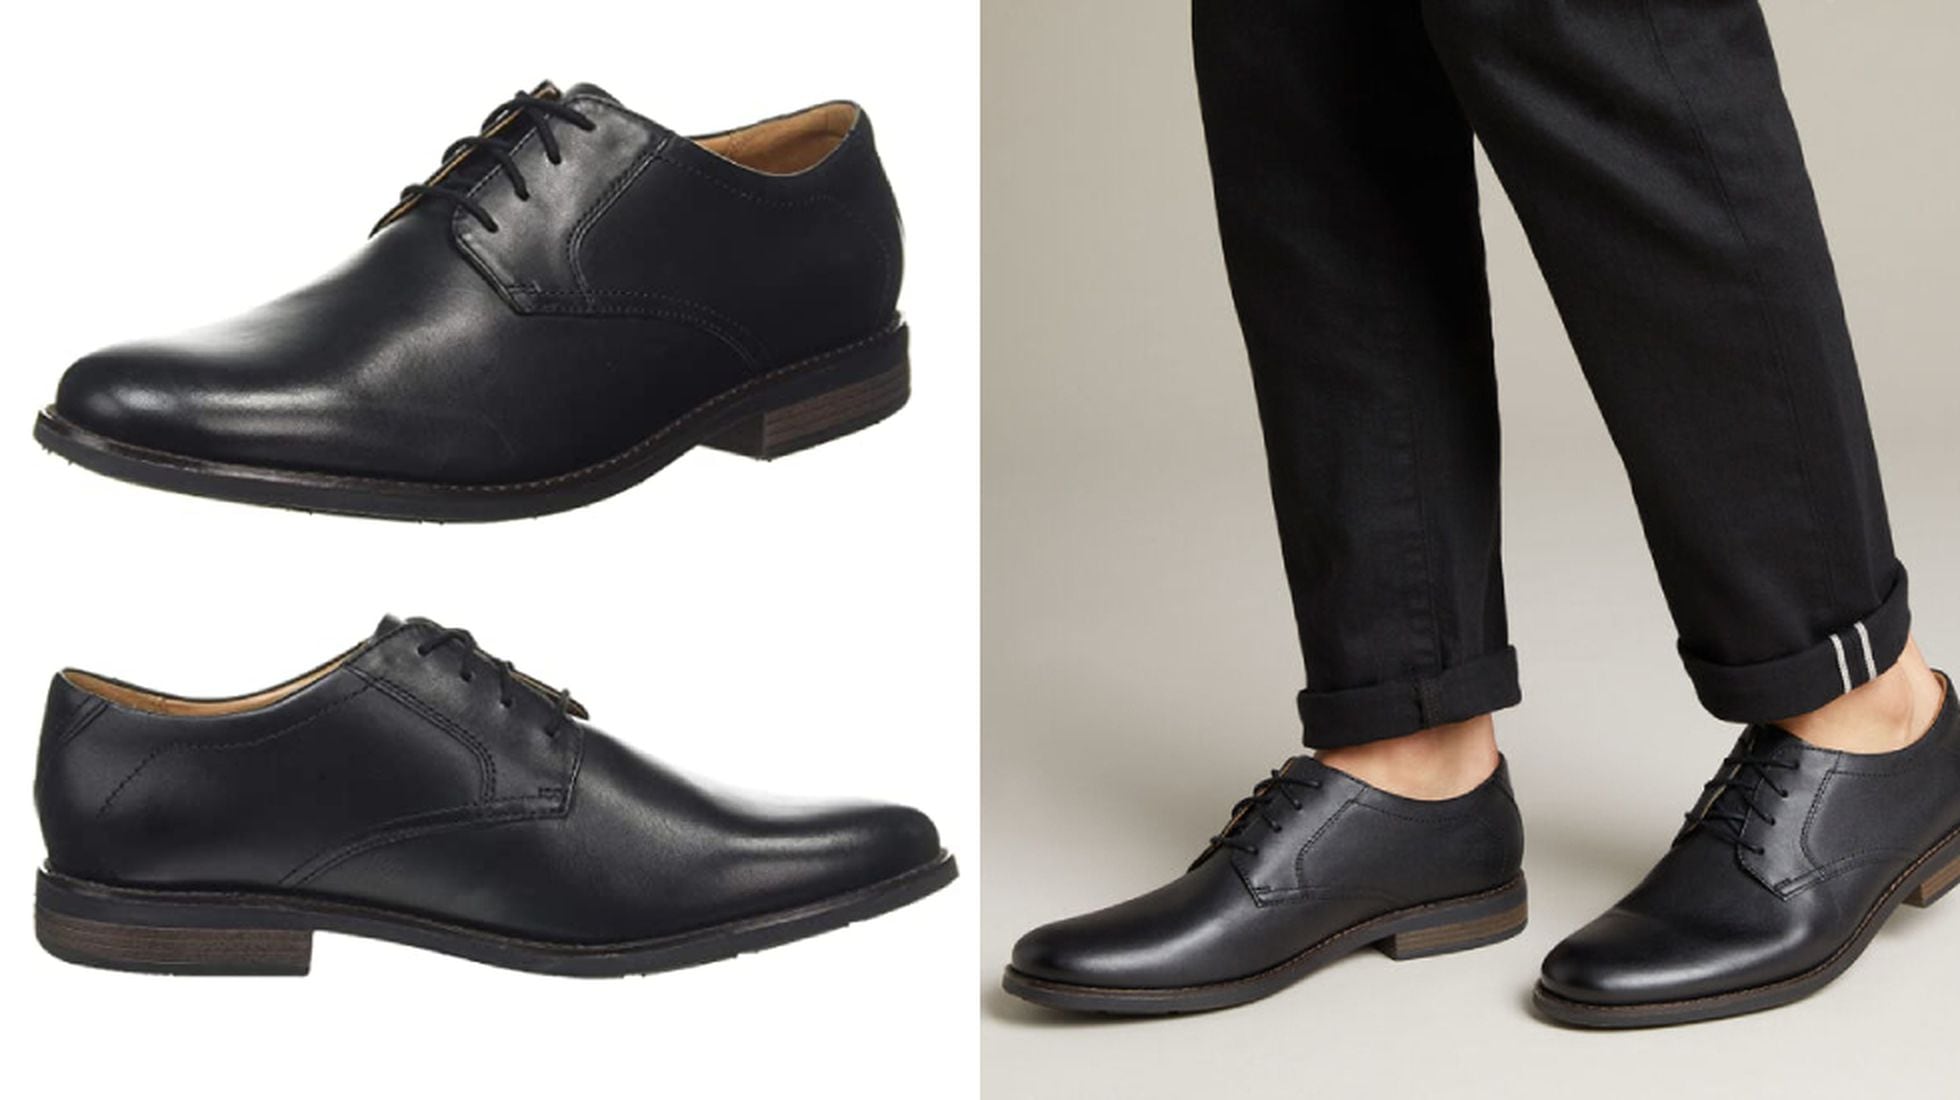 Diez zapatos de vestir para hombre a precios asequibles en el regreso a oficina | Escaparate | EL PAÍS